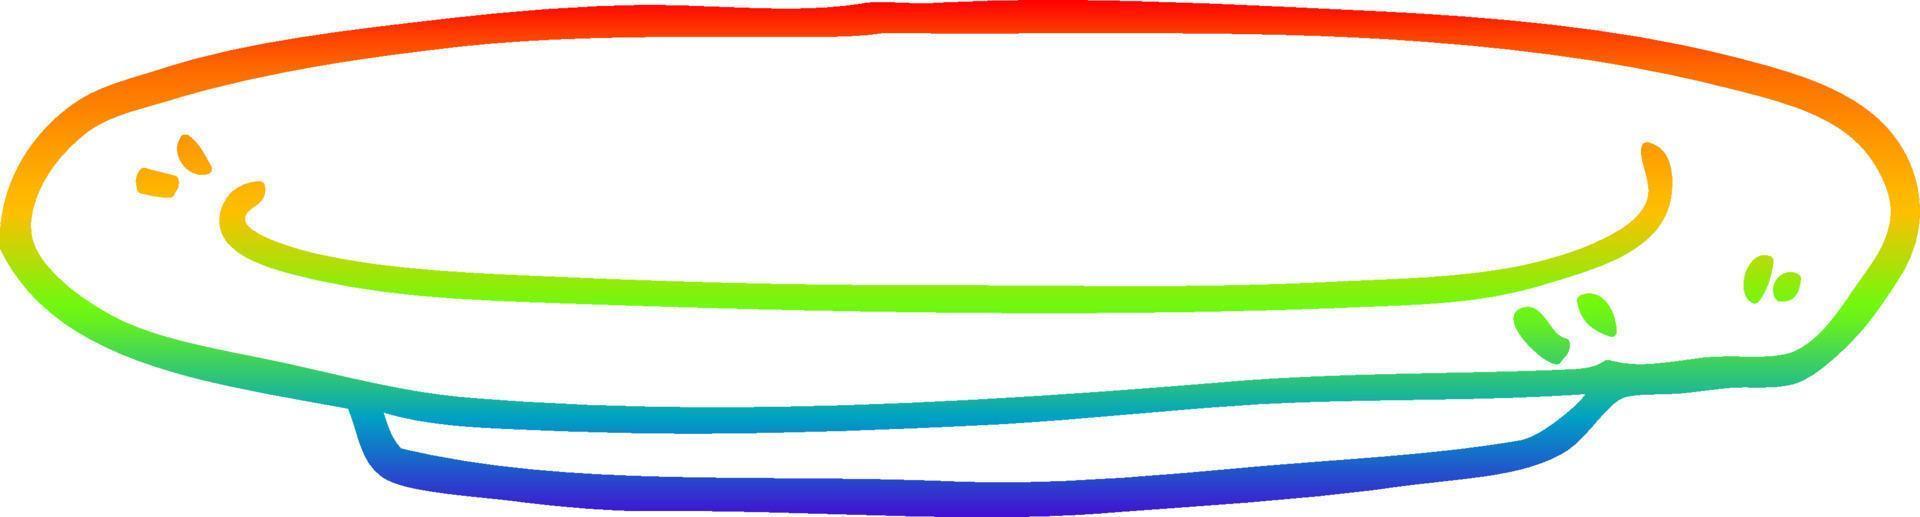 piatto del fumetto del disegno della linea del gradiente dell'arcobaleno vettore